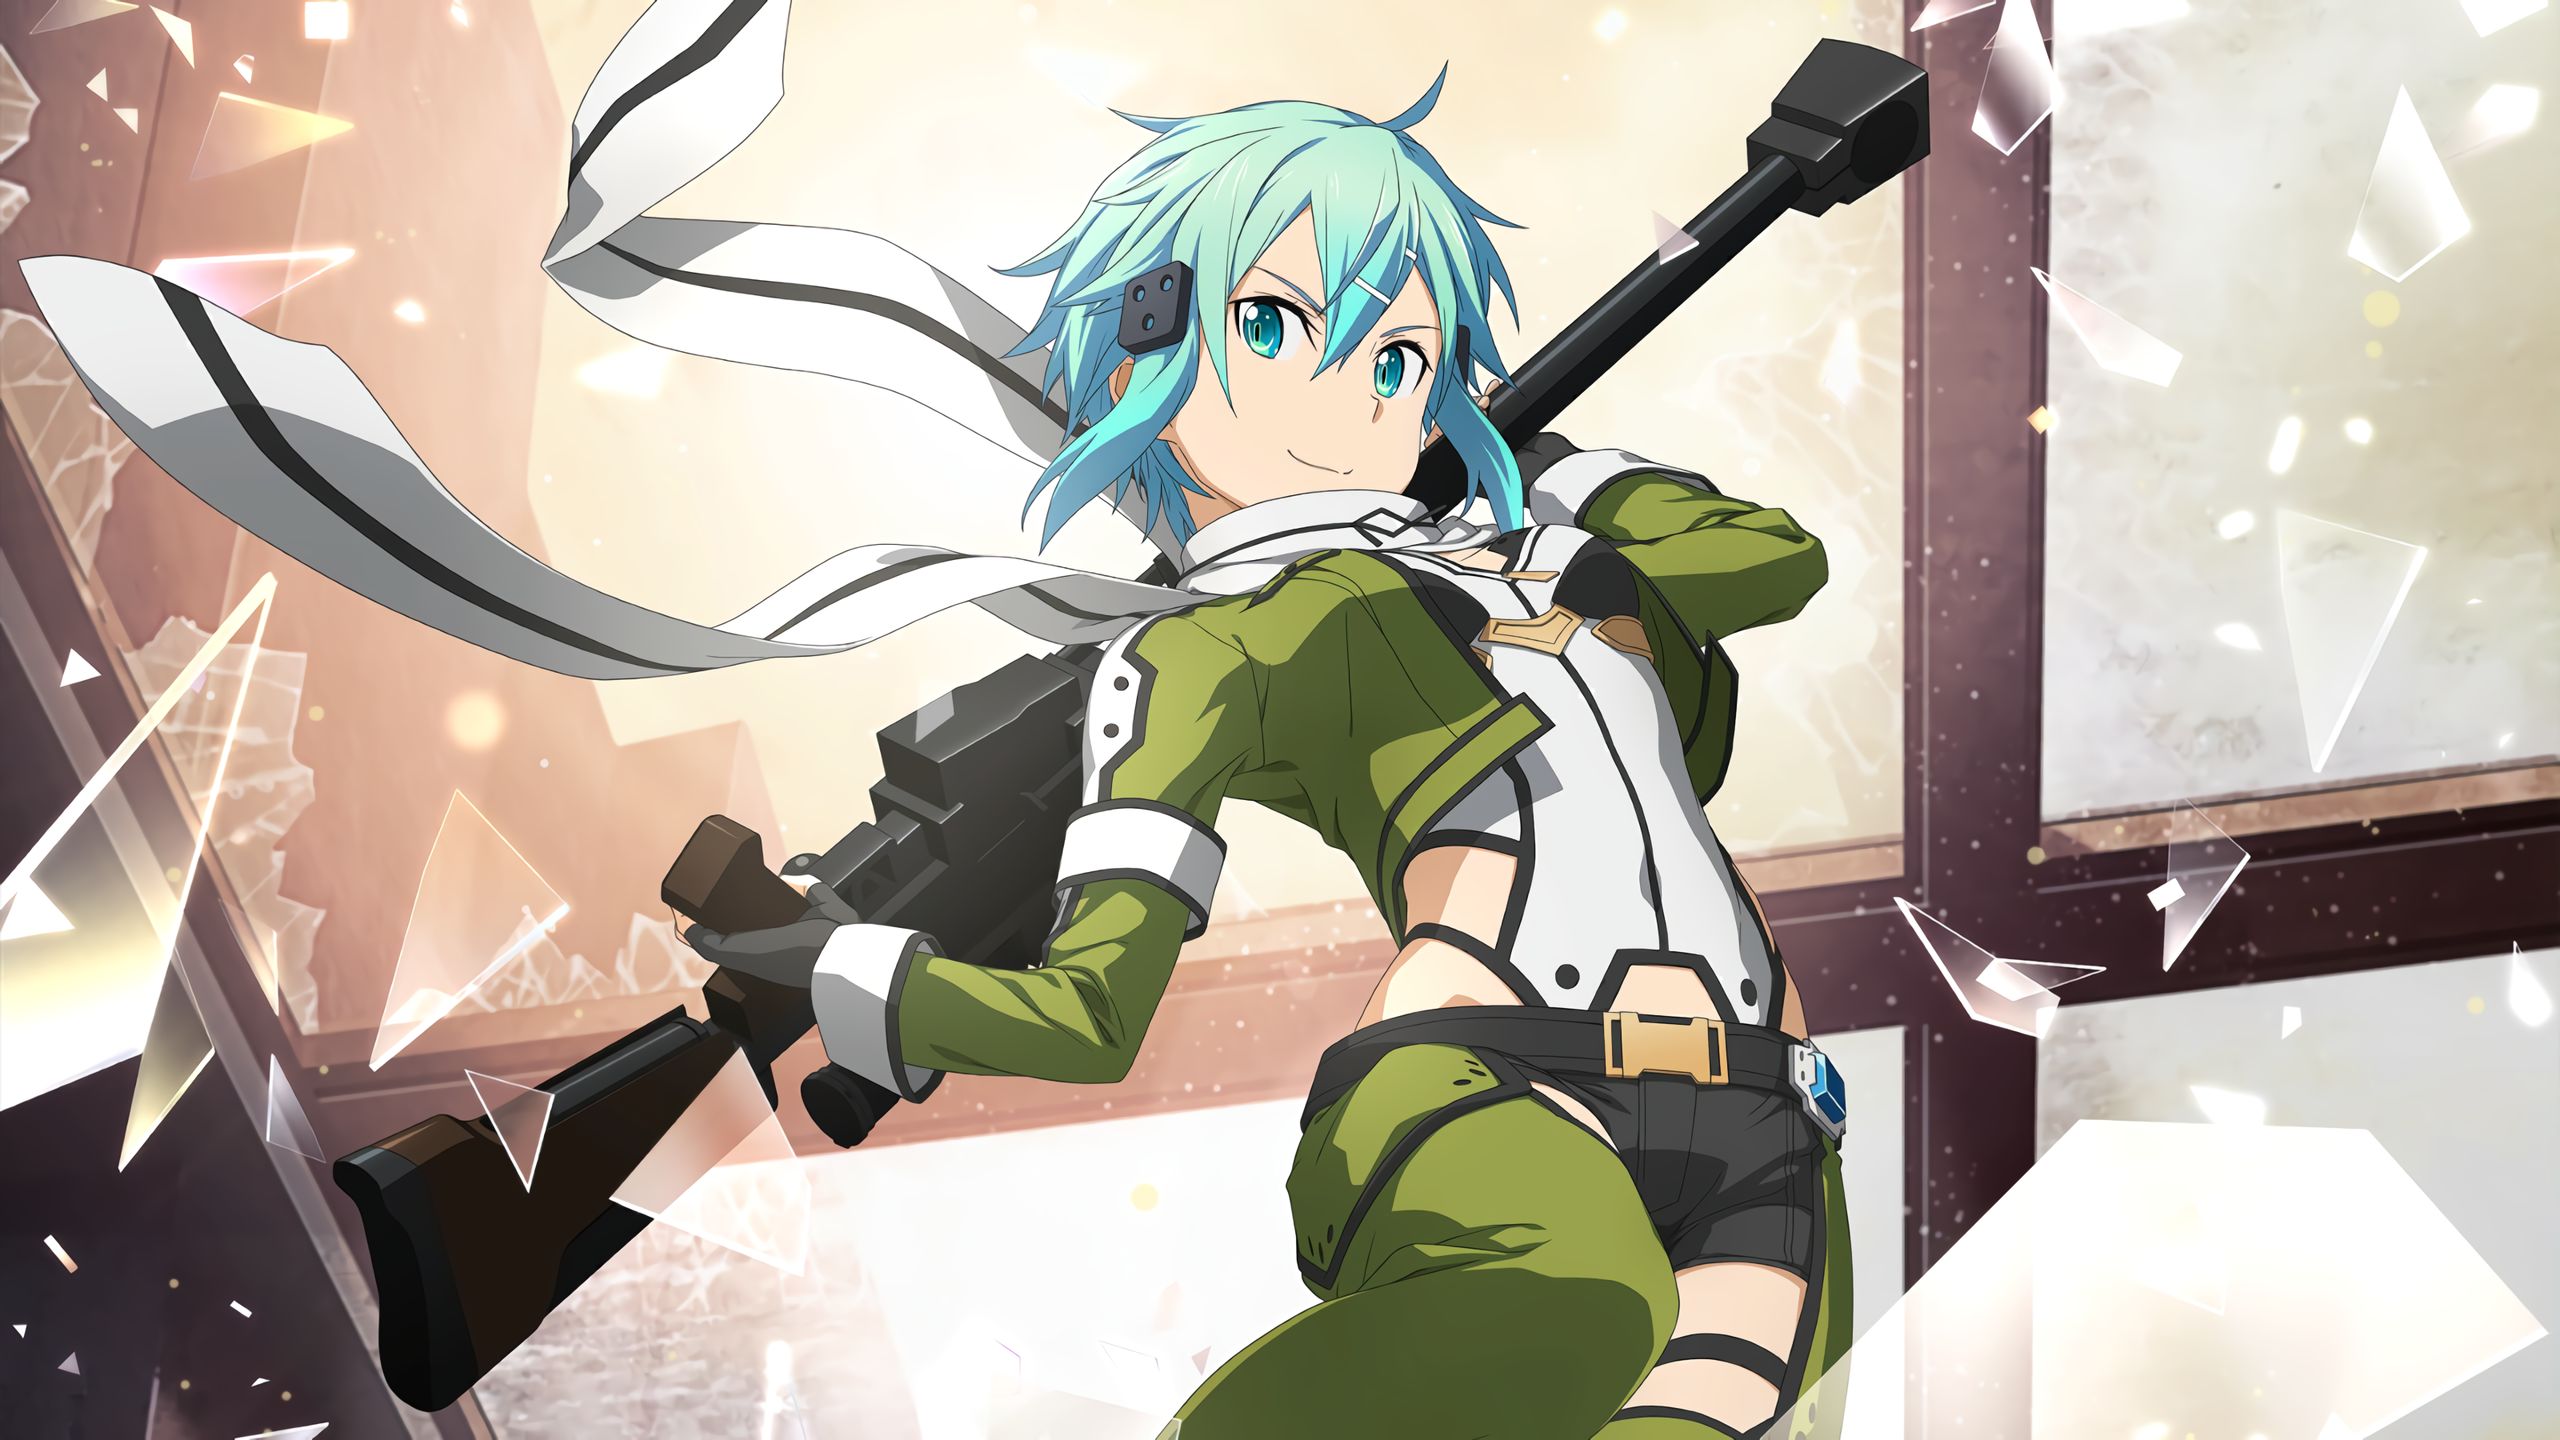 Descarga gratuita de fondo de pantalla para móvil de Sword Art Online, Animado, Sinon (Arte De Espada En Línea), Shino Asada, Sword Art Online: Alicización Rising Steel.